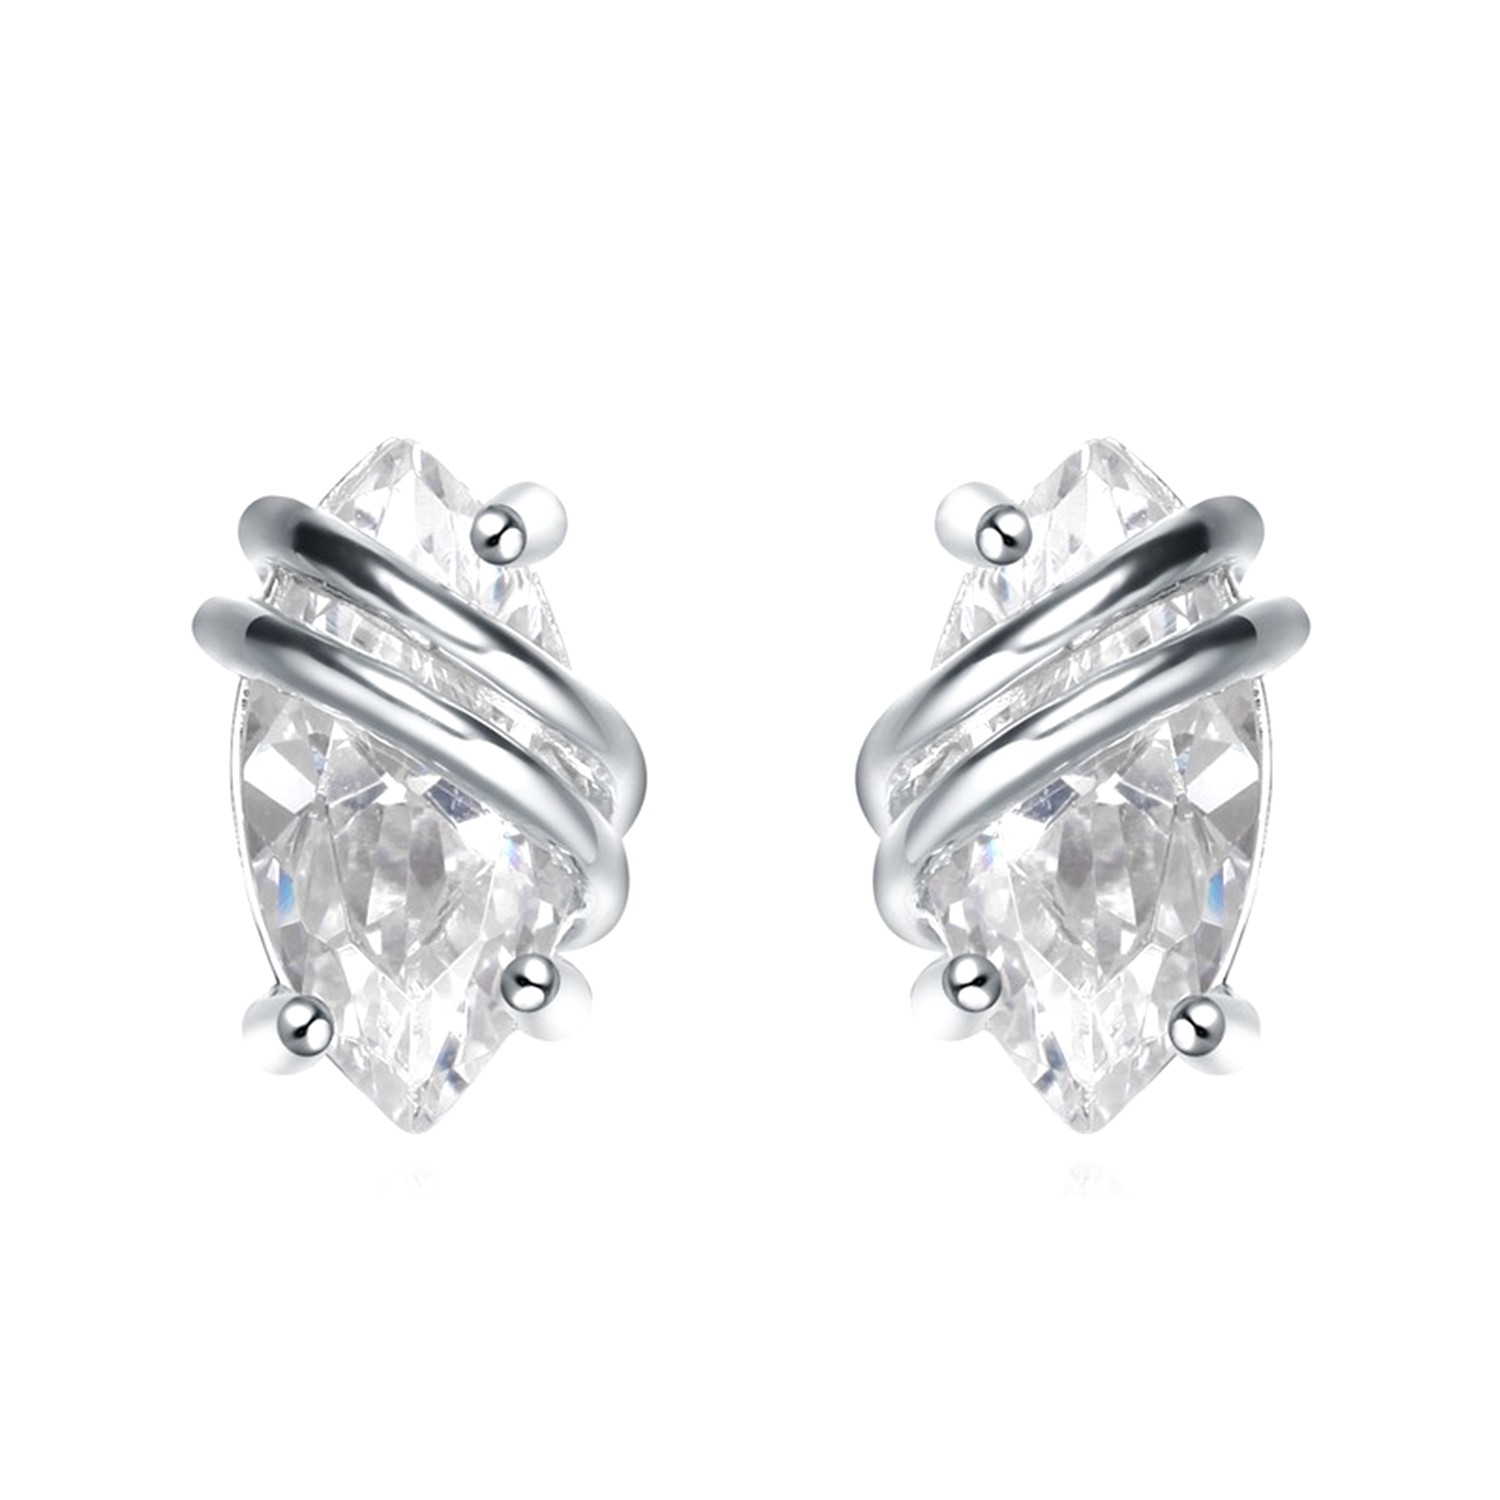 Minimalist earrings Sterling Silver Surrounding Bling CZ Simple Style Little Earring Stud Jewelry